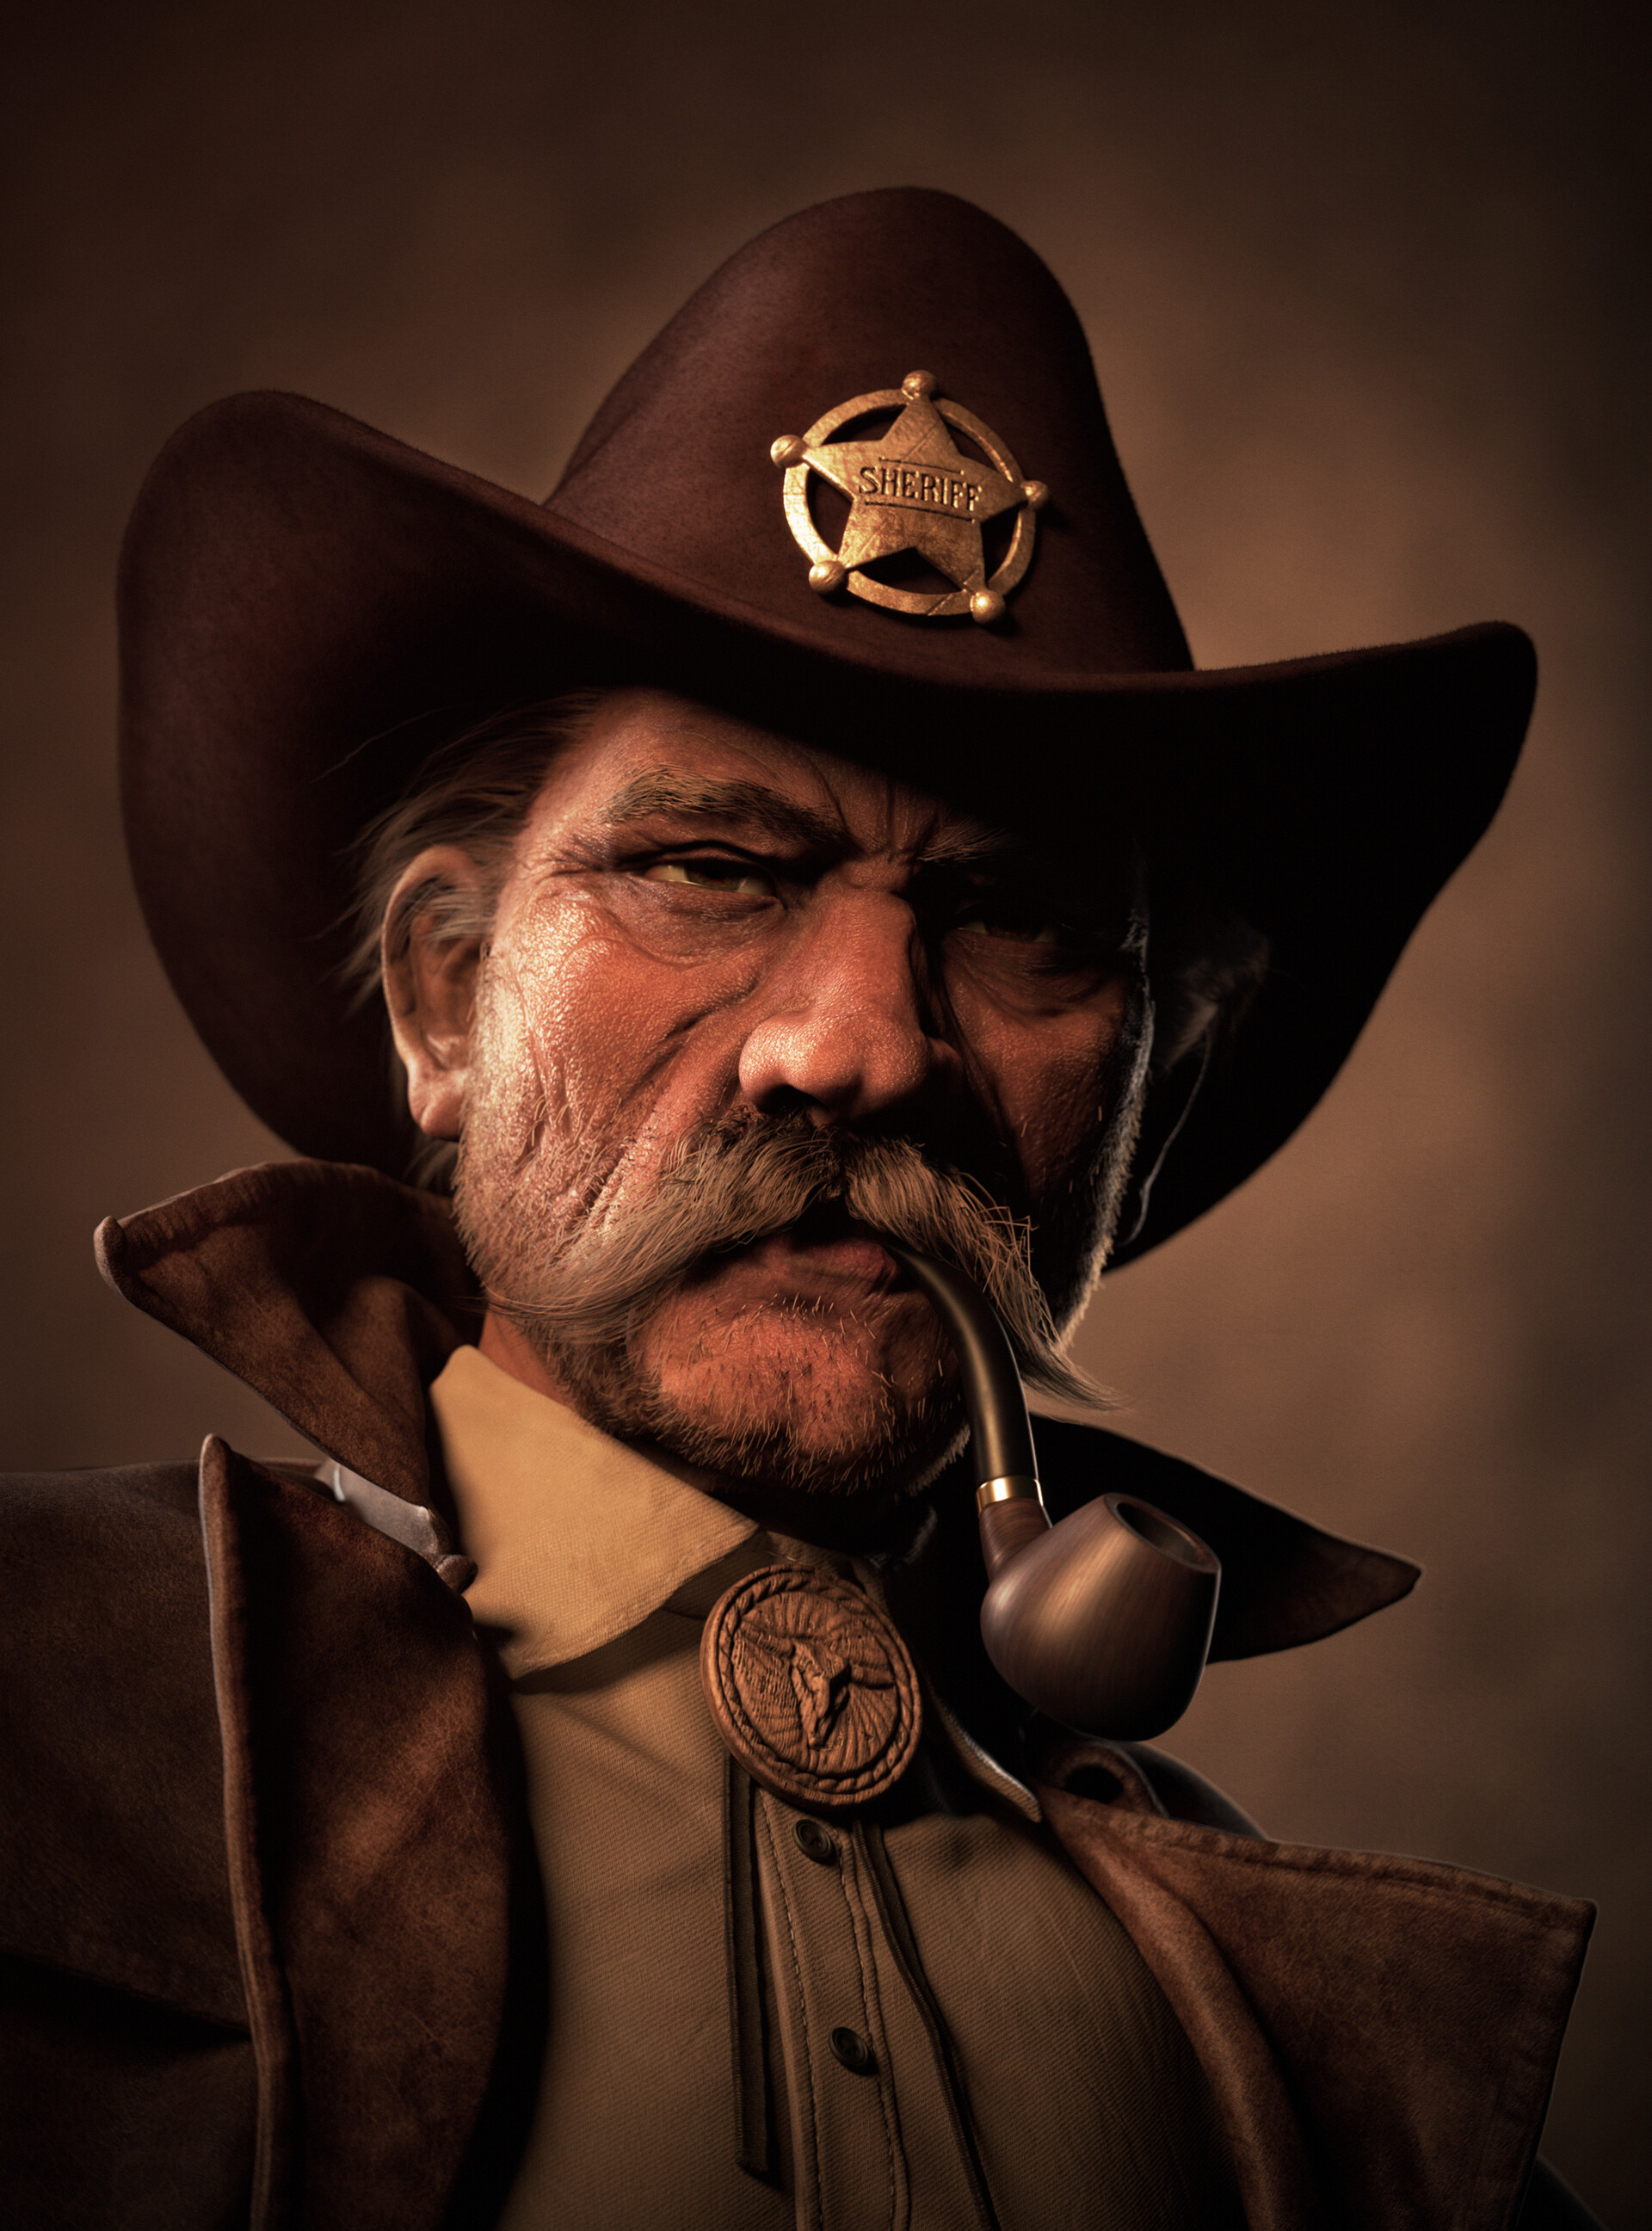 Cowboy sheriff